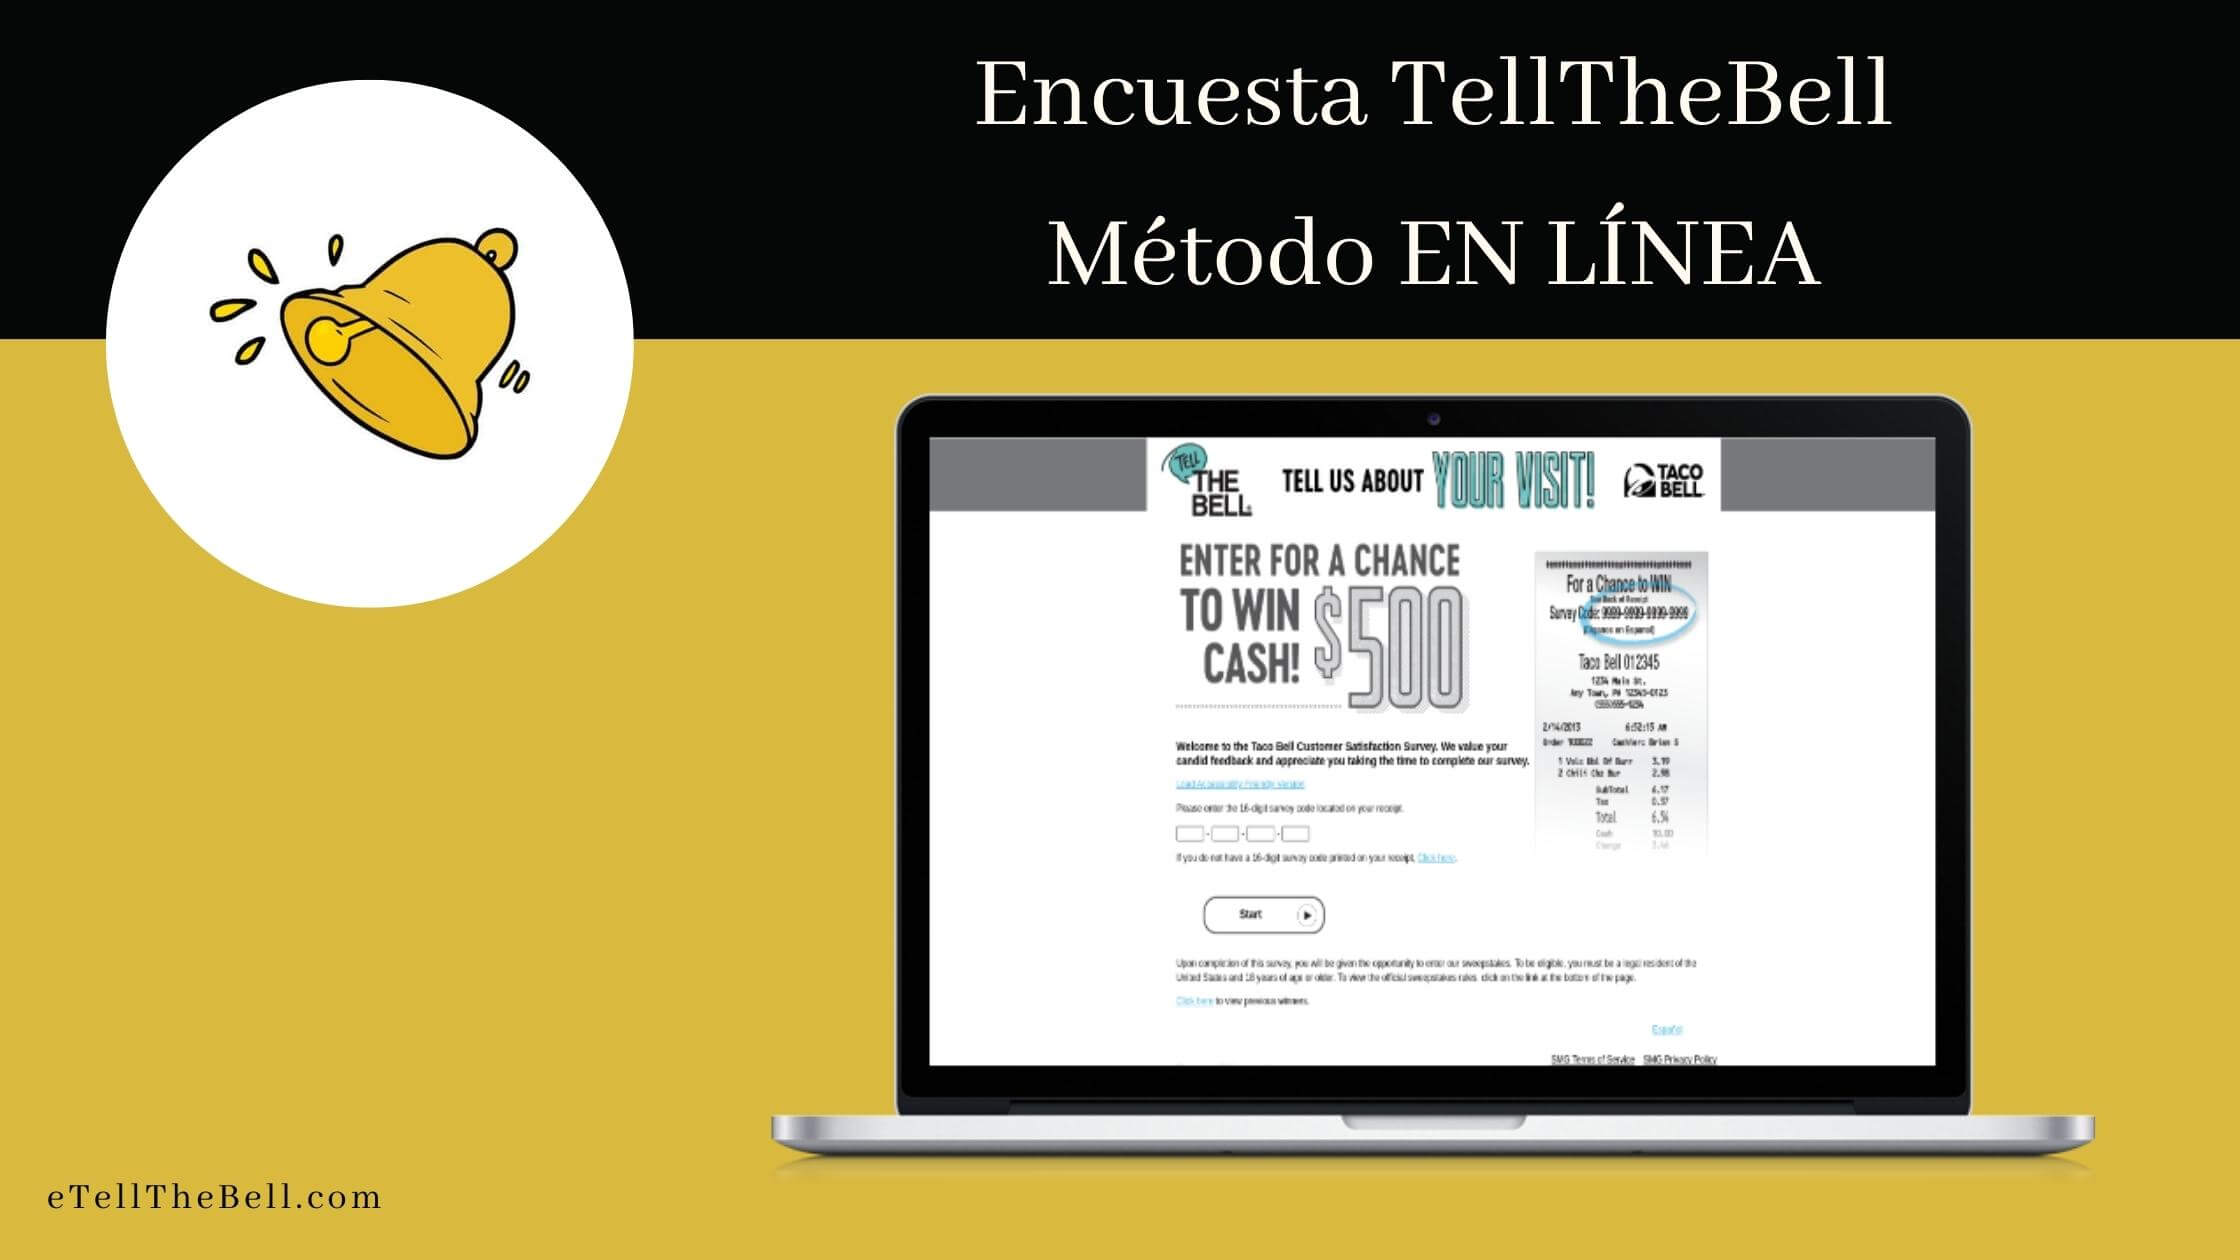 Visite la Encuesta oficial de Taco Bell y seleccione Español para realizar la encuesta en español.